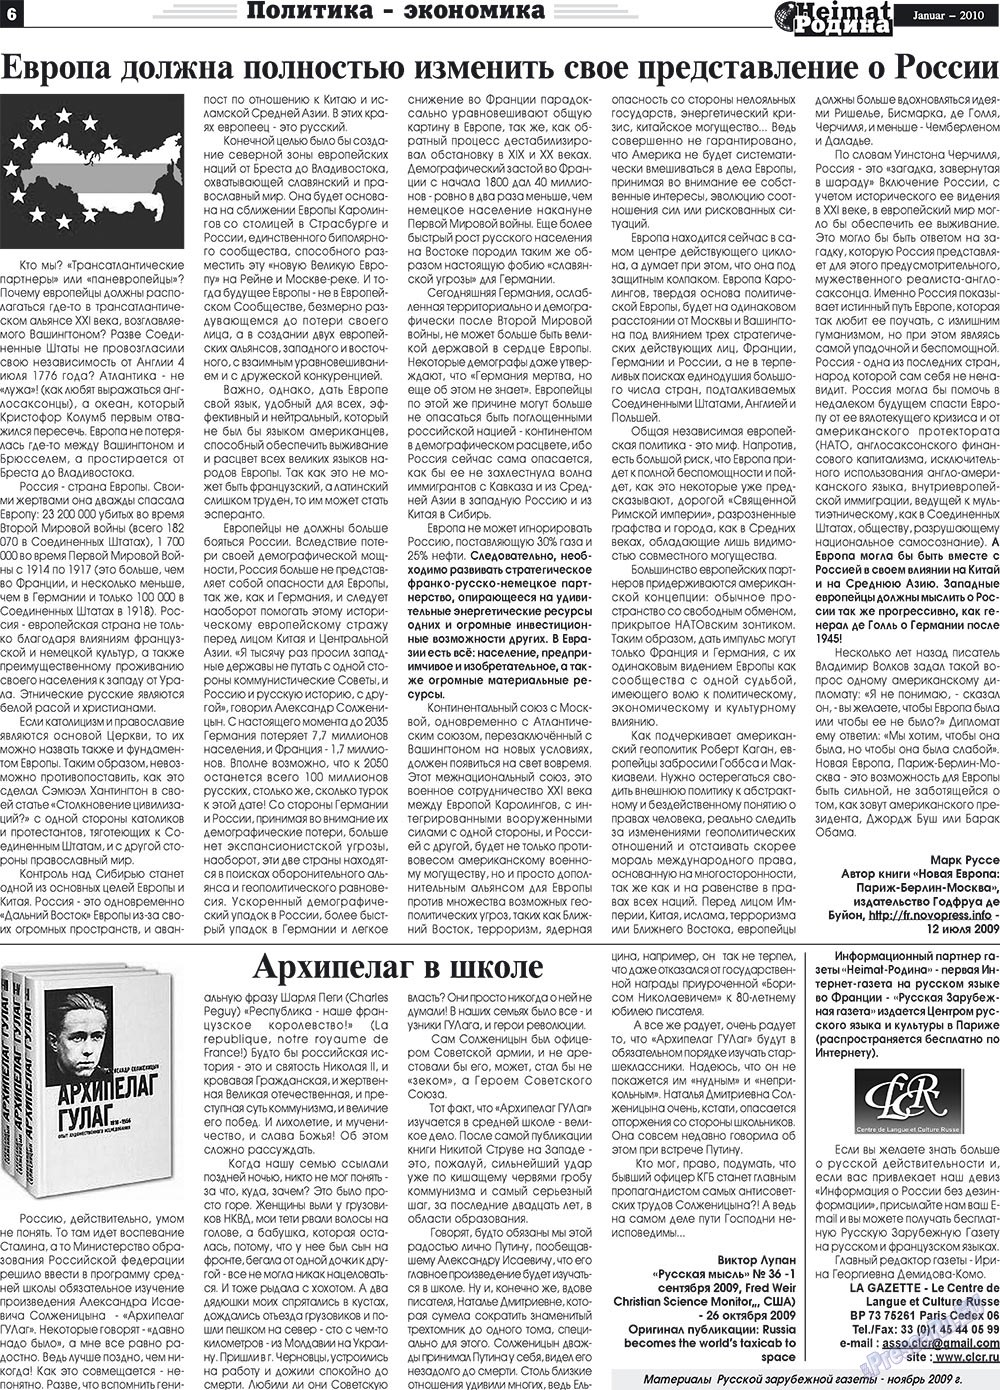 Heimat-Родина (газета). 2010 год, номер 1, стр. 6